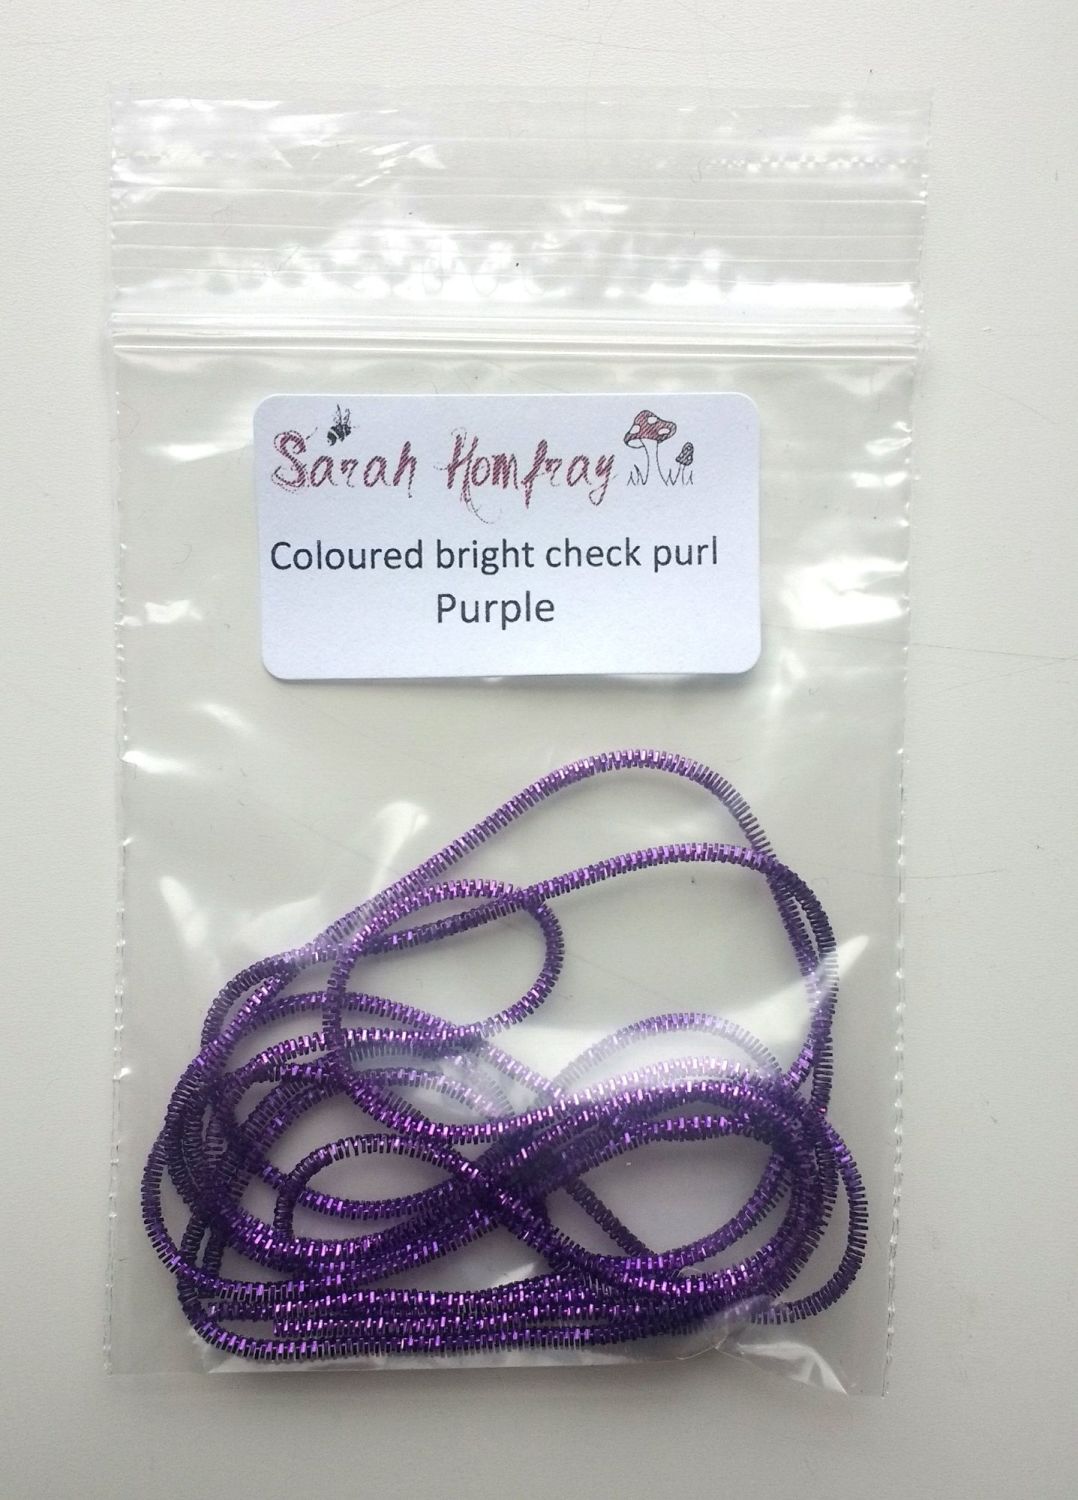 NEW! Coloured bright check purl no.6 - Purple